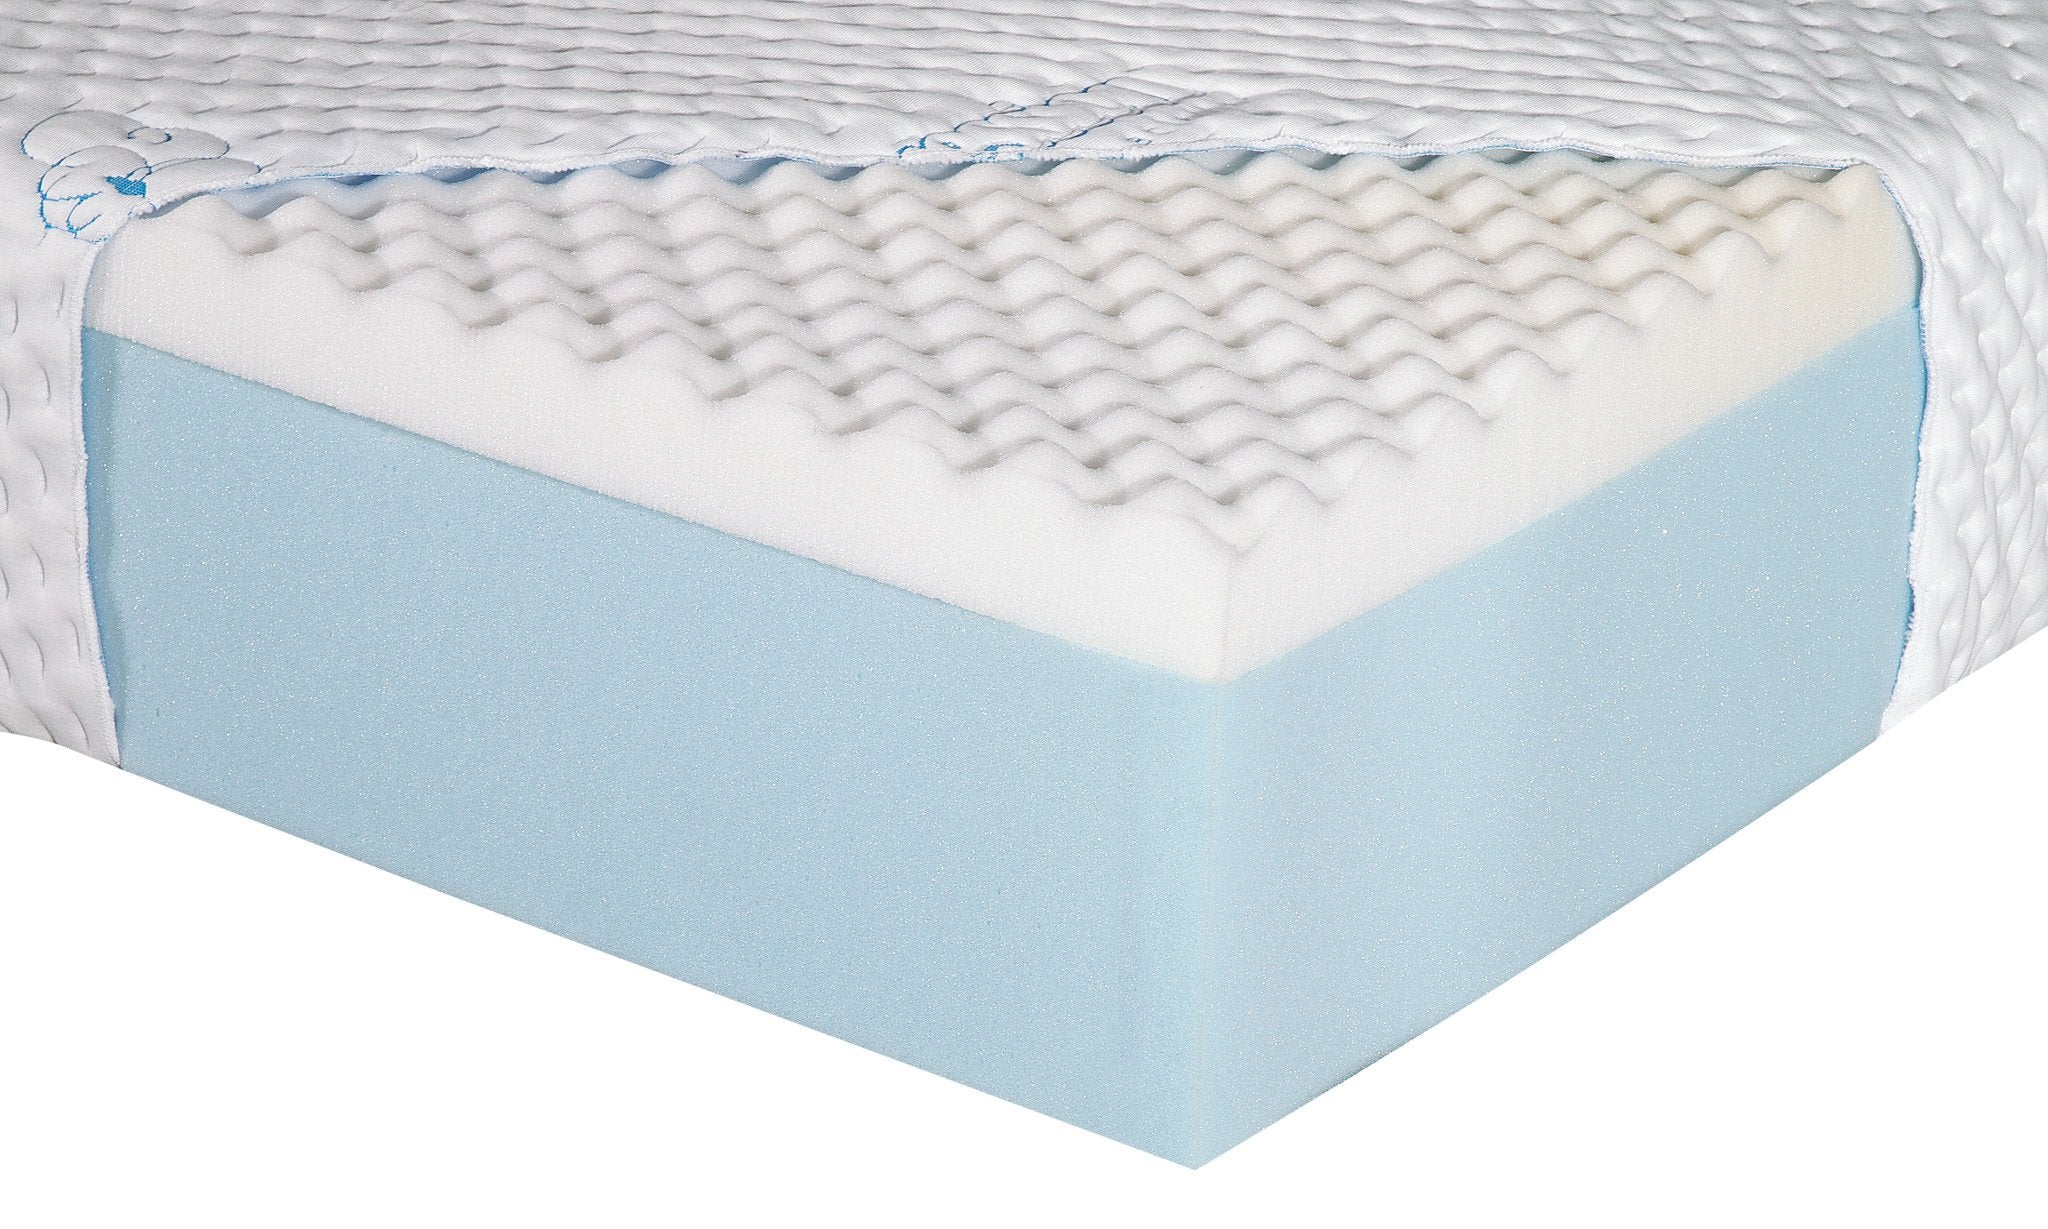 egg shell foam mattress